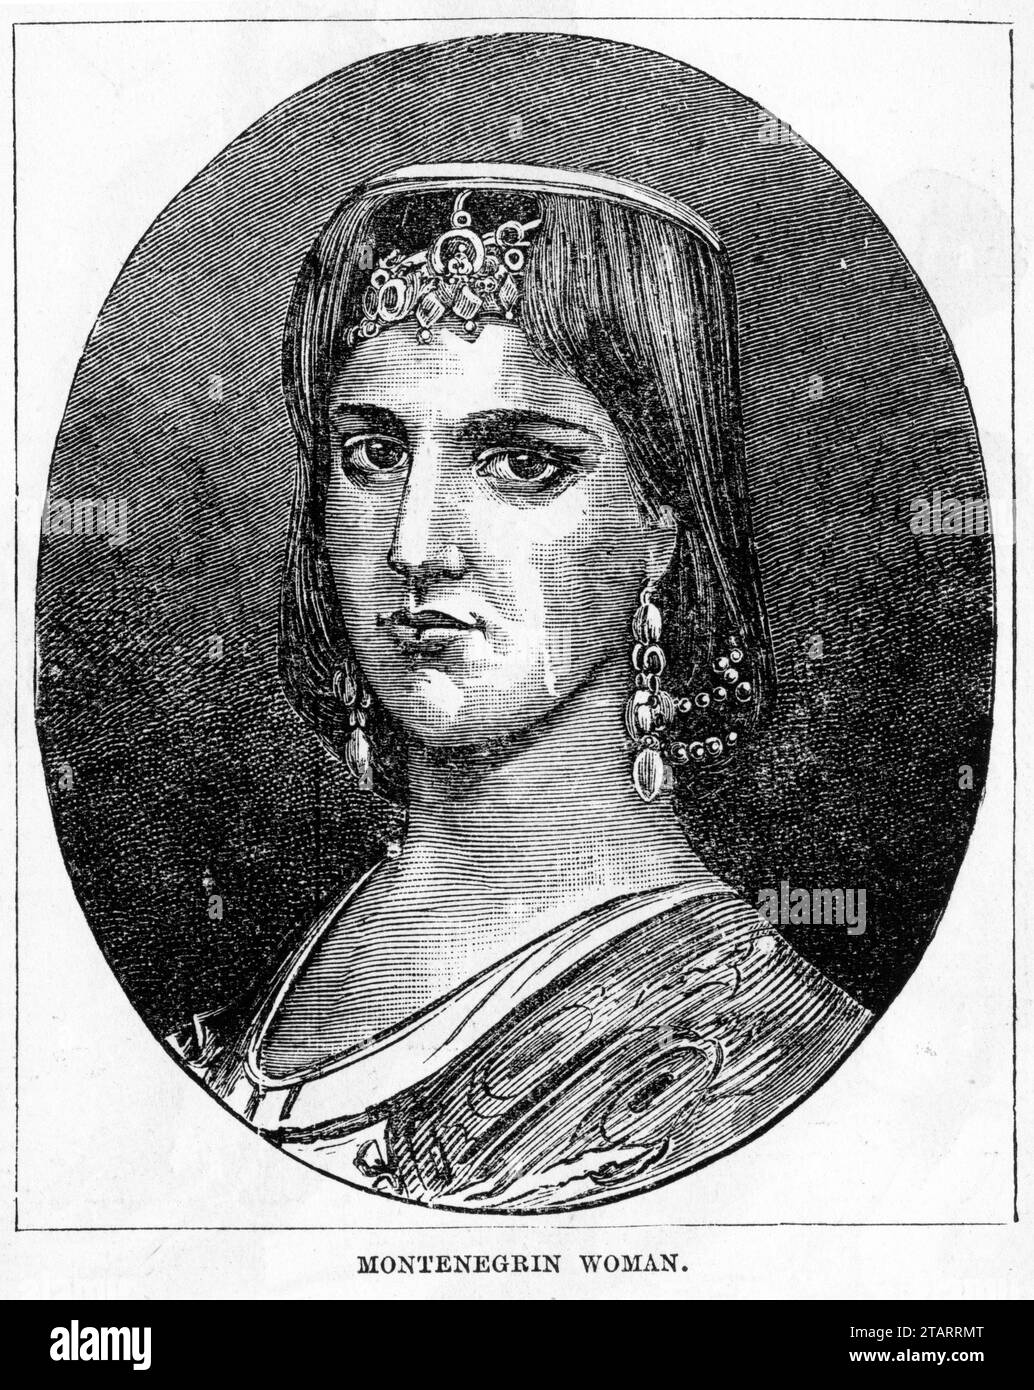 Ritratto inciso di una donna del Montenegro in costume tradizionale. Pubblicato intorno al 1887 Foto Stock